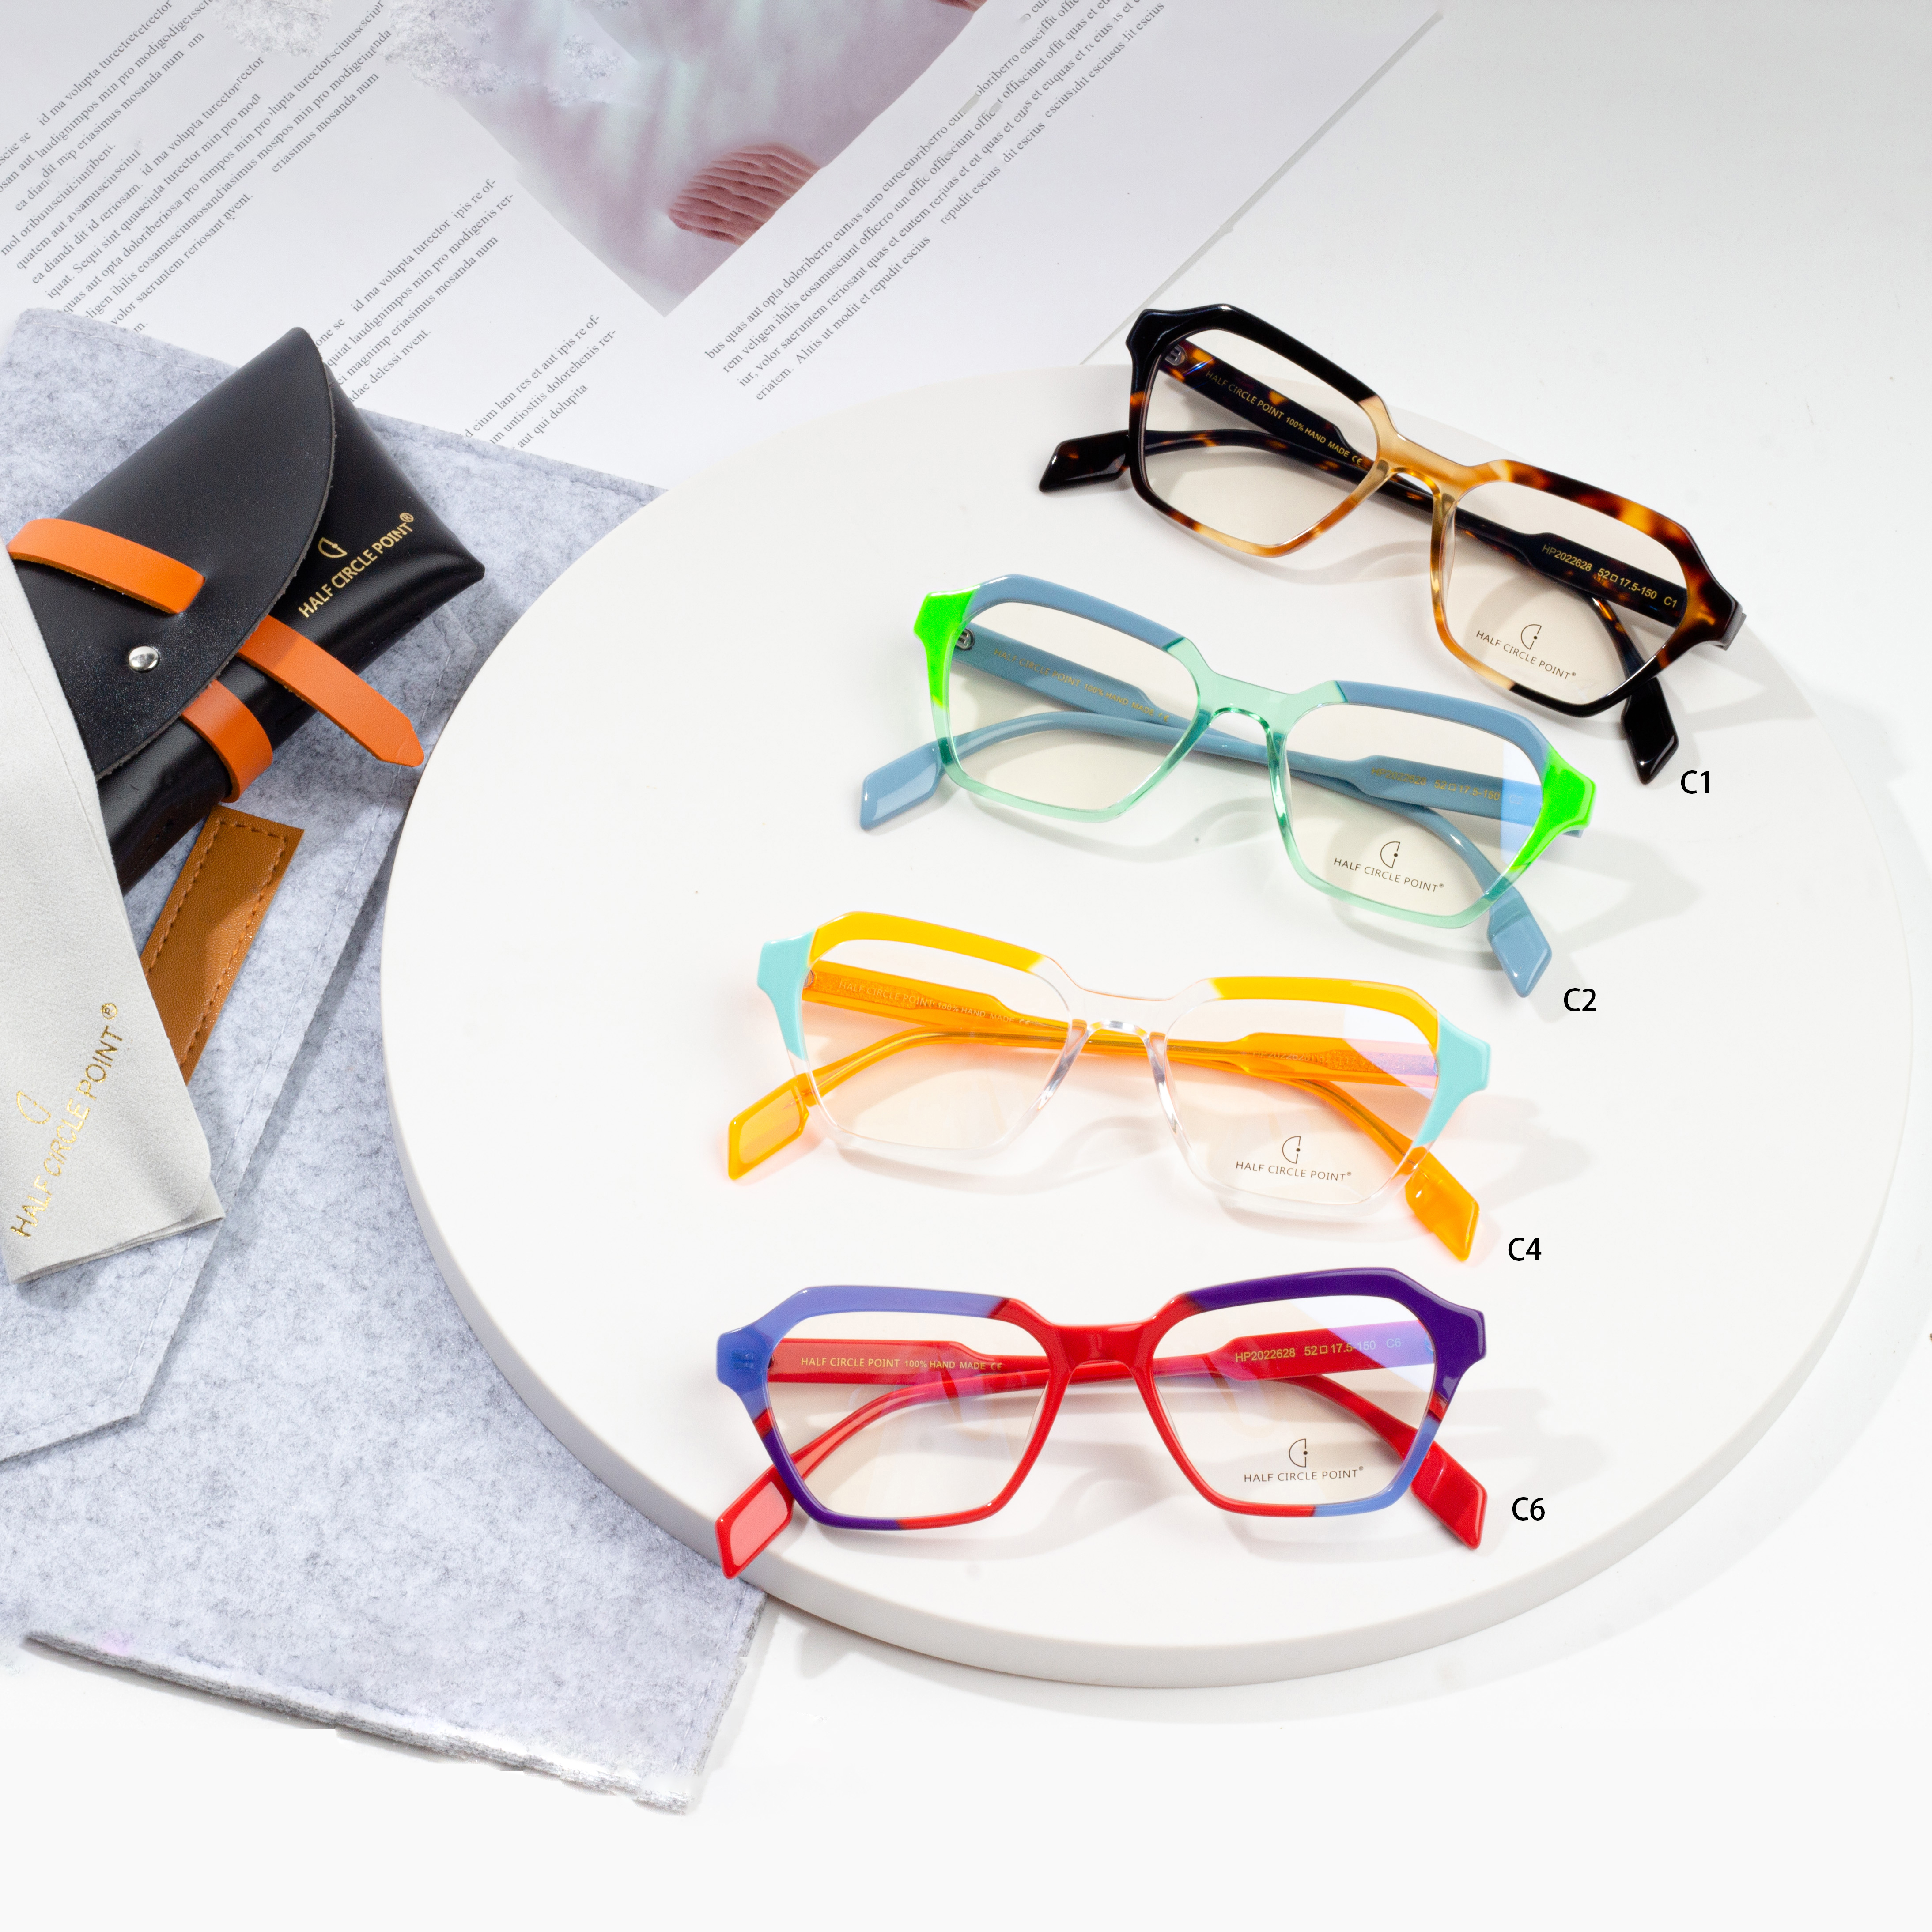 Stylish Optical Glasses Frames Eyeglasses Featured Image